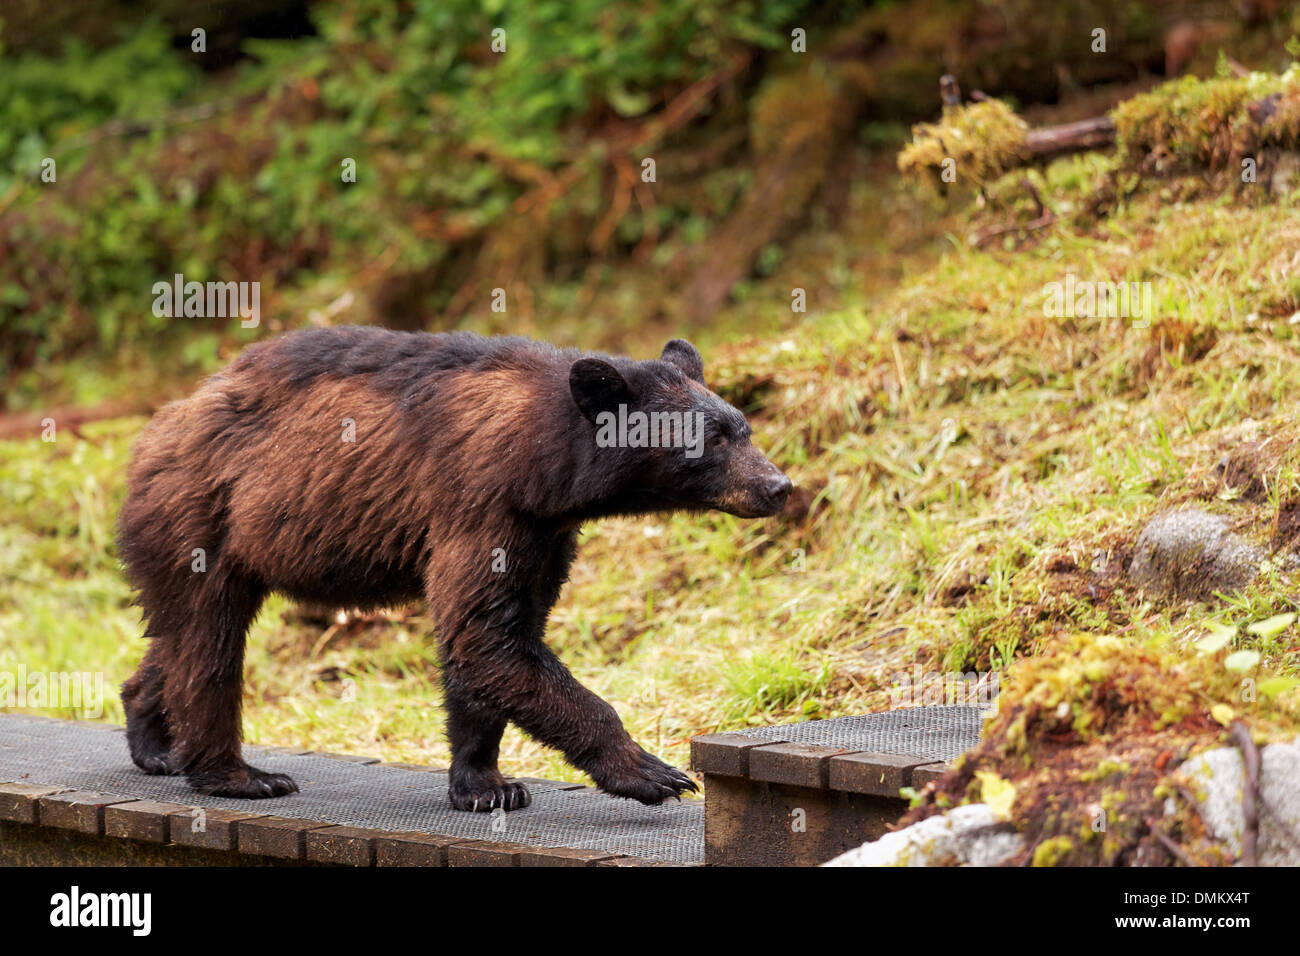 Côtières femelle ours brun marchant le long de passerelle en bois, de l'Observatoire de la faune d'anan, la Forêt Nationale Tongass, sud-est, de l'Alaska Banque D'Images